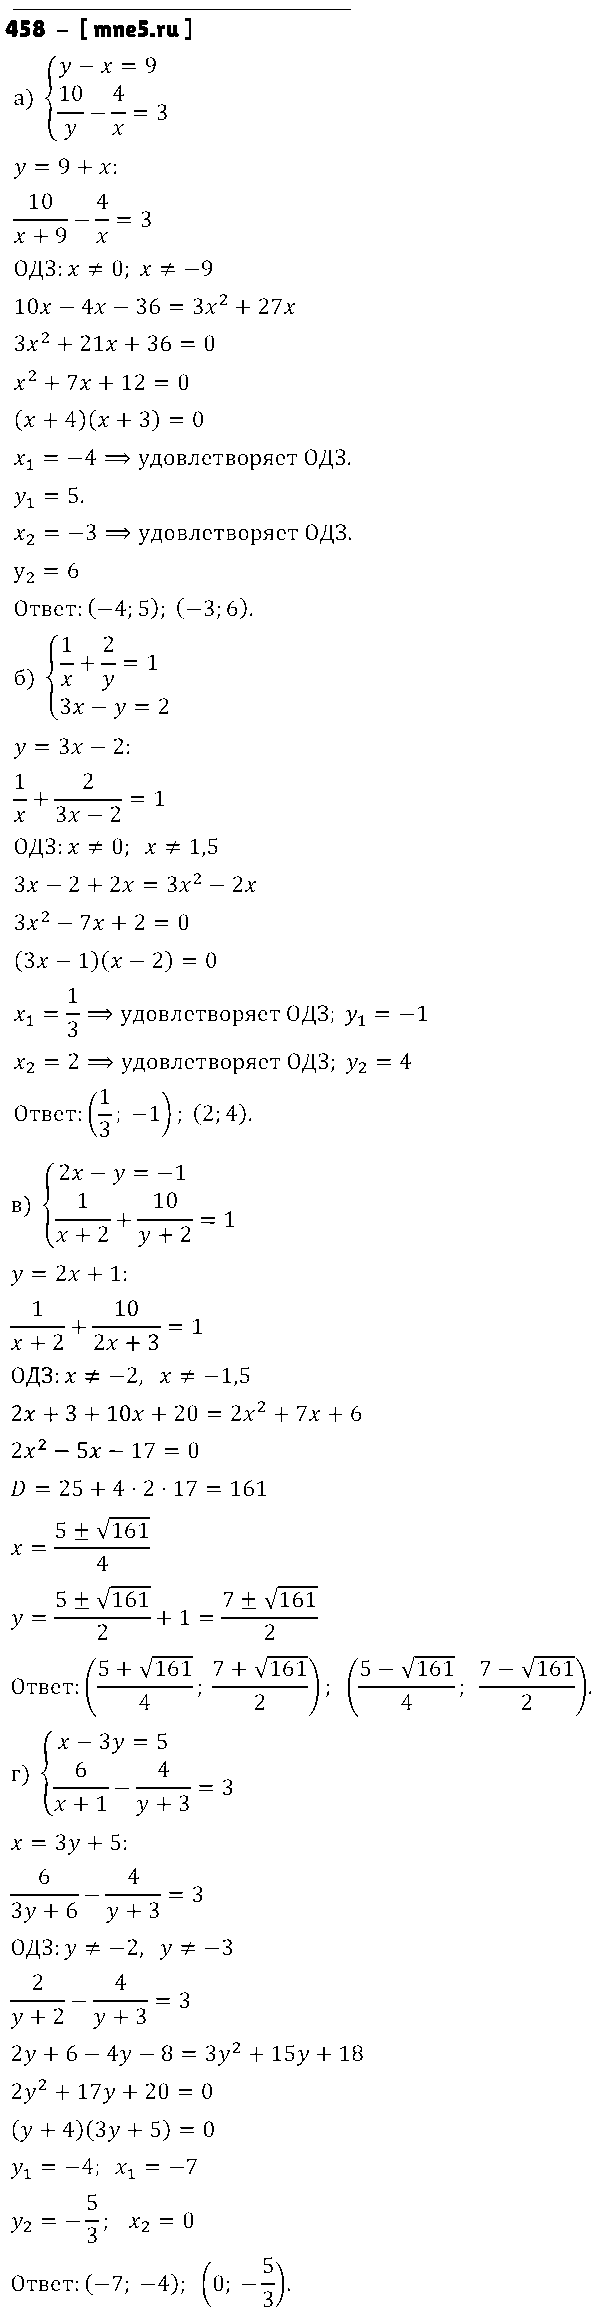 ГДЗ Алгебра 9 класс - 458